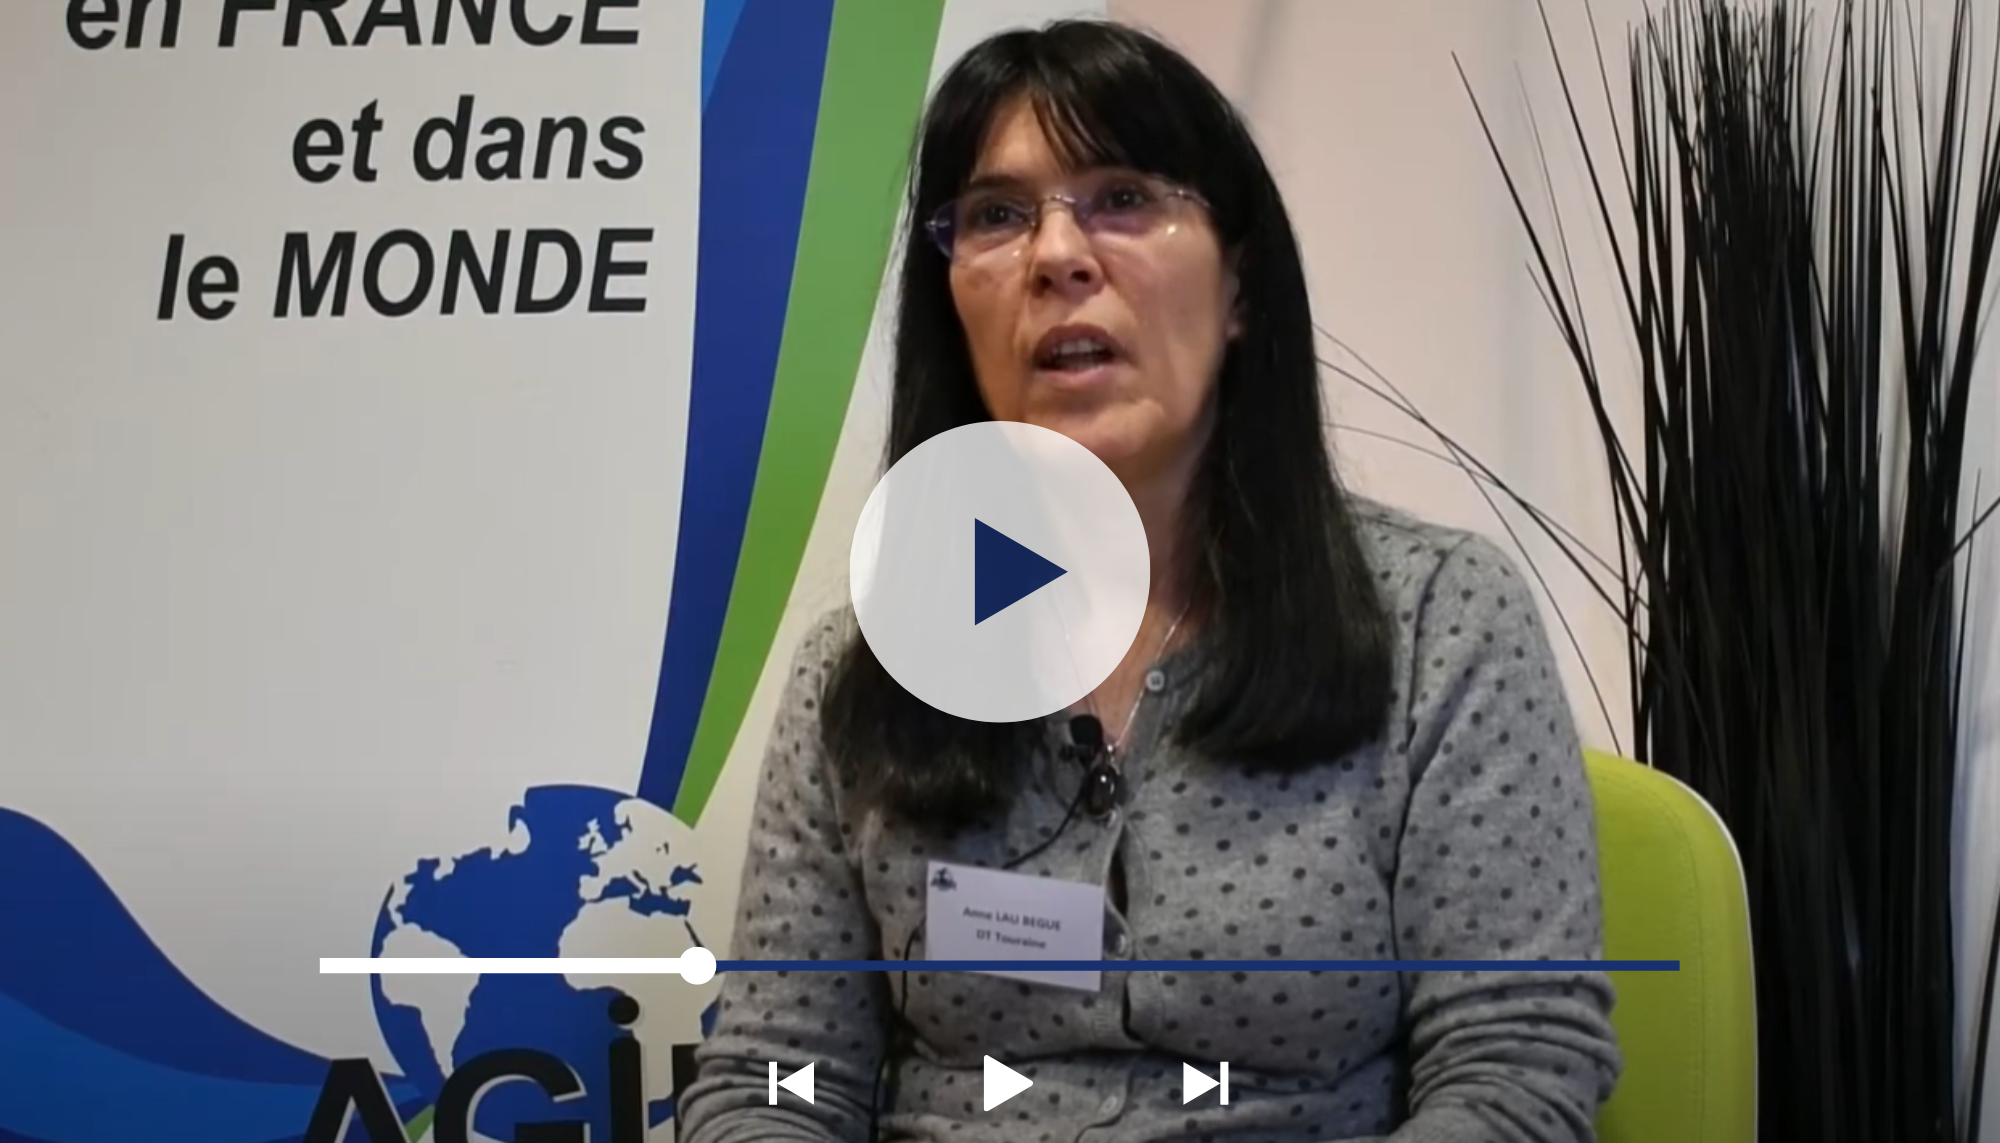 Vidéo de présentation de la délégation touraine d'AGIRabcd